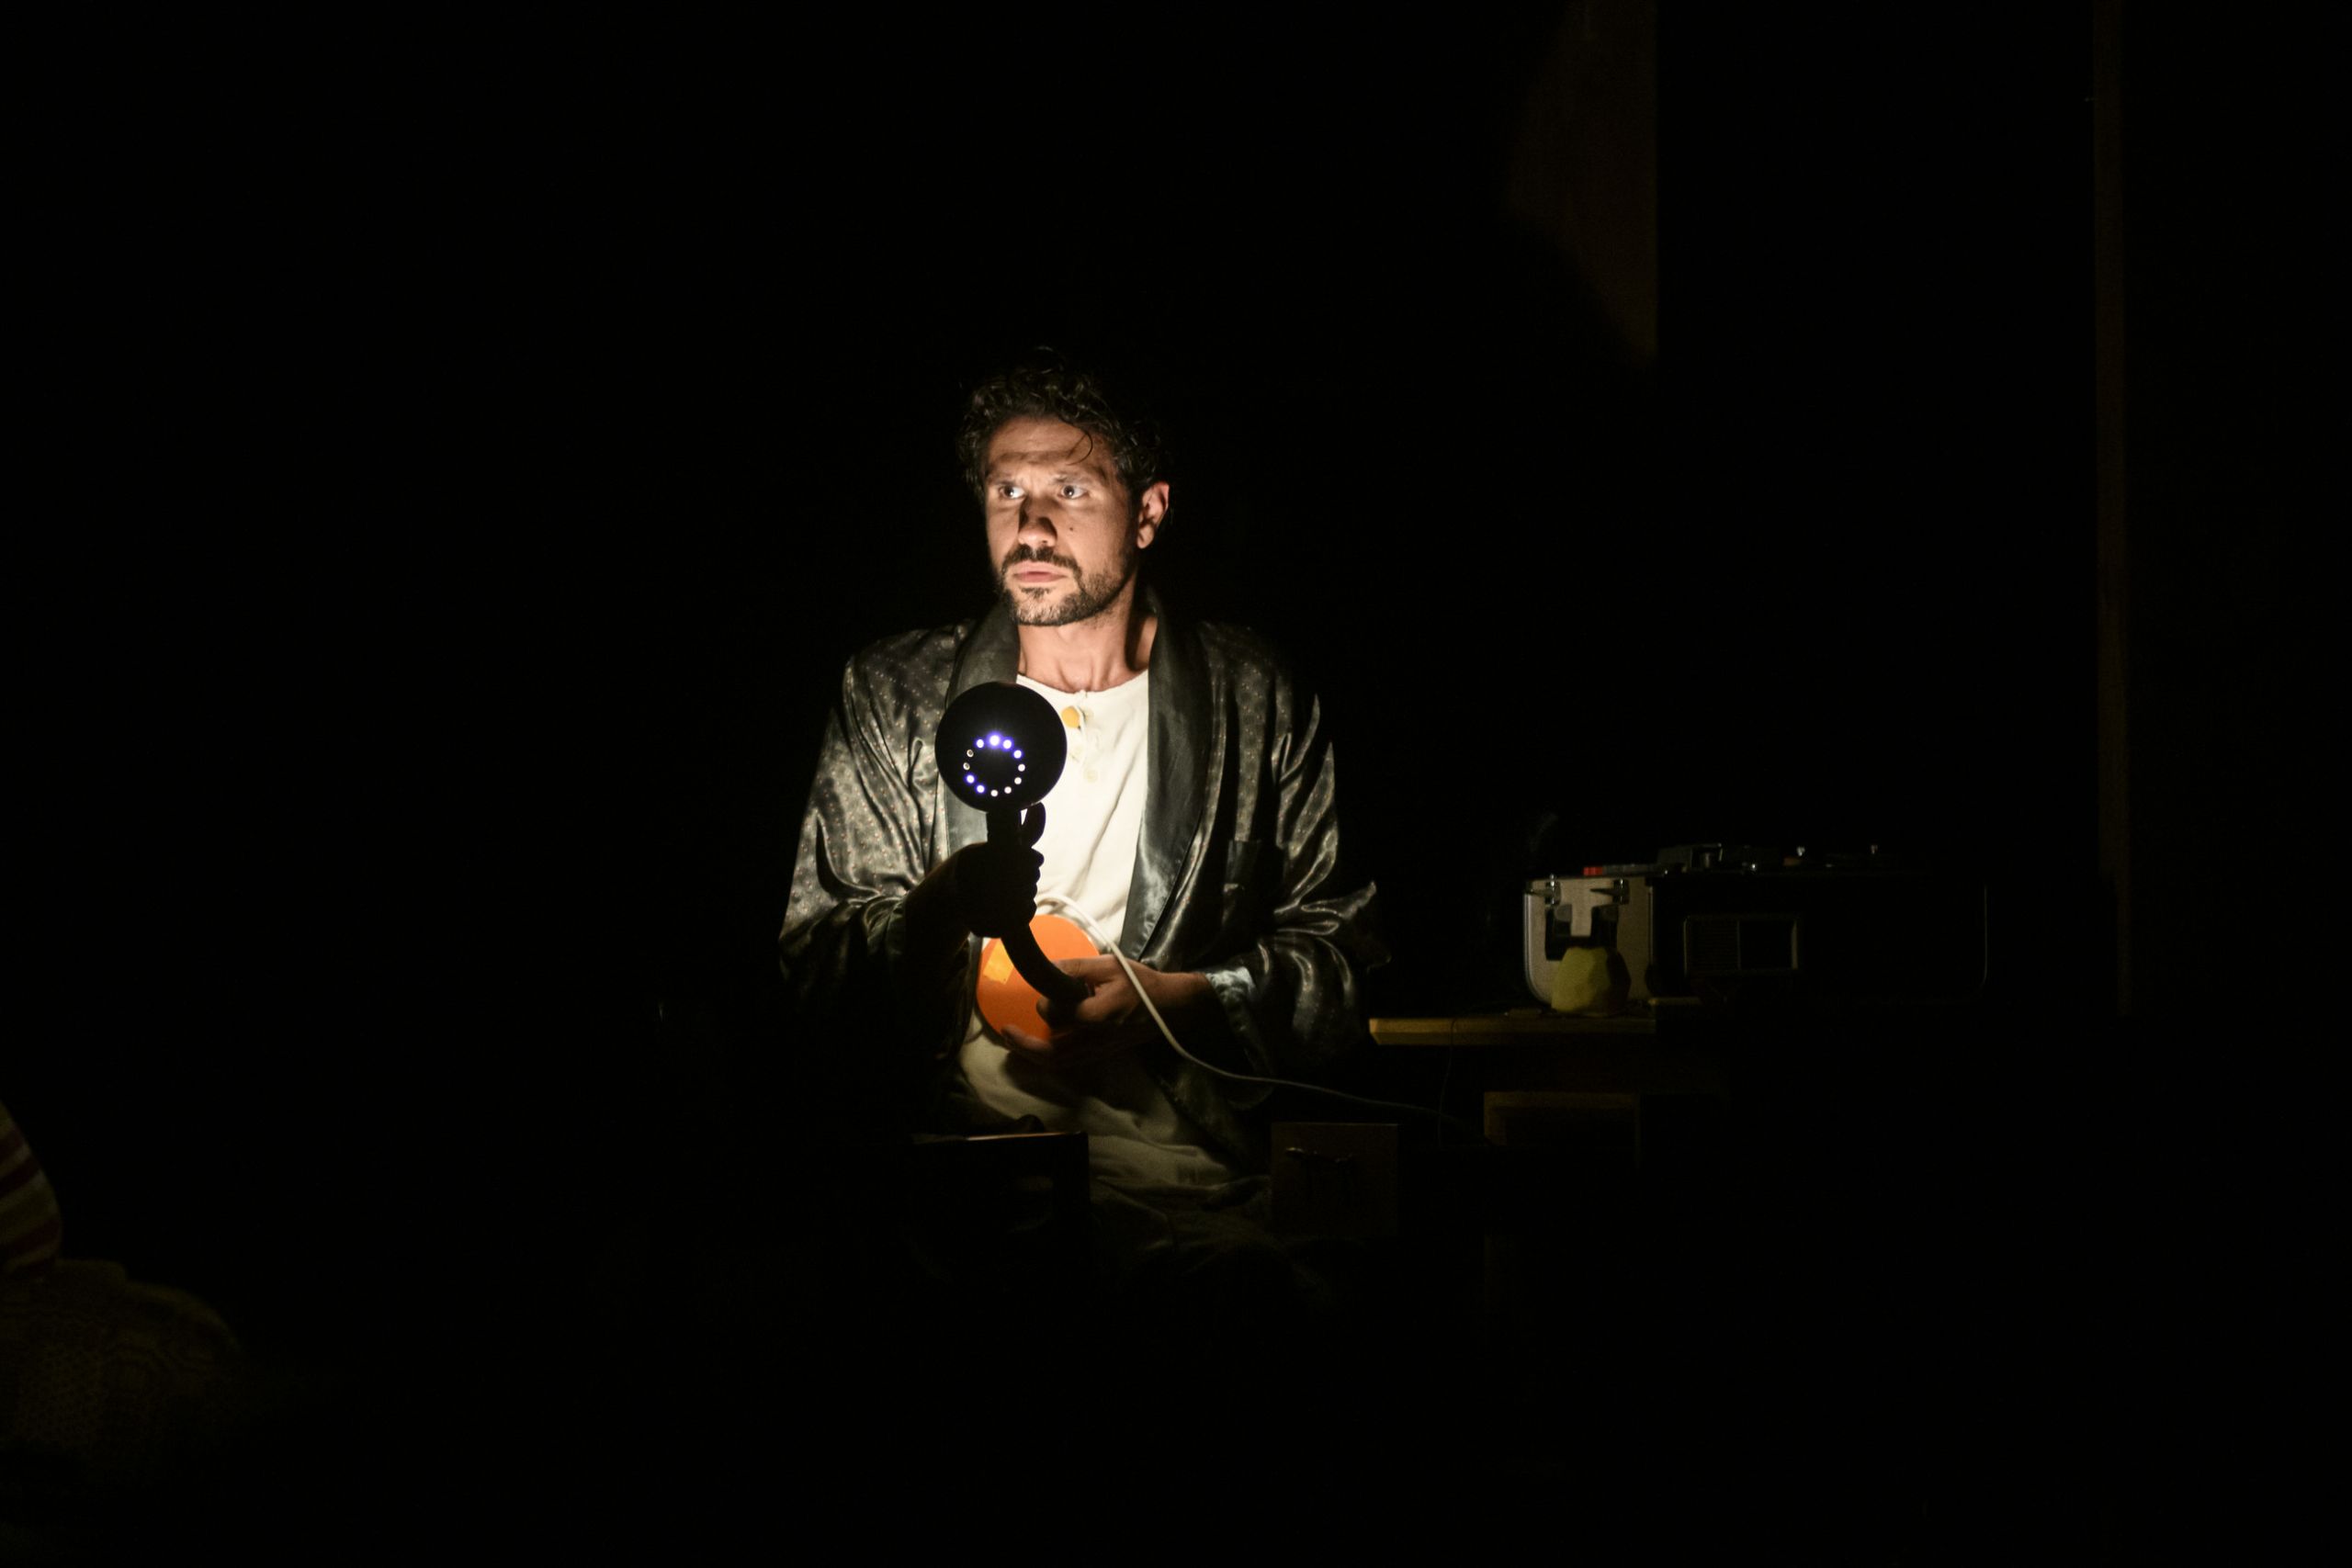 Η Μηχανή του Τούρινγκ: Ο Ορφέας Αυγουστίδης επιστρέφει ως Άλαν Τούρινγκ στο Νέο Θέατρο Κατερίνας Βασιλάκου